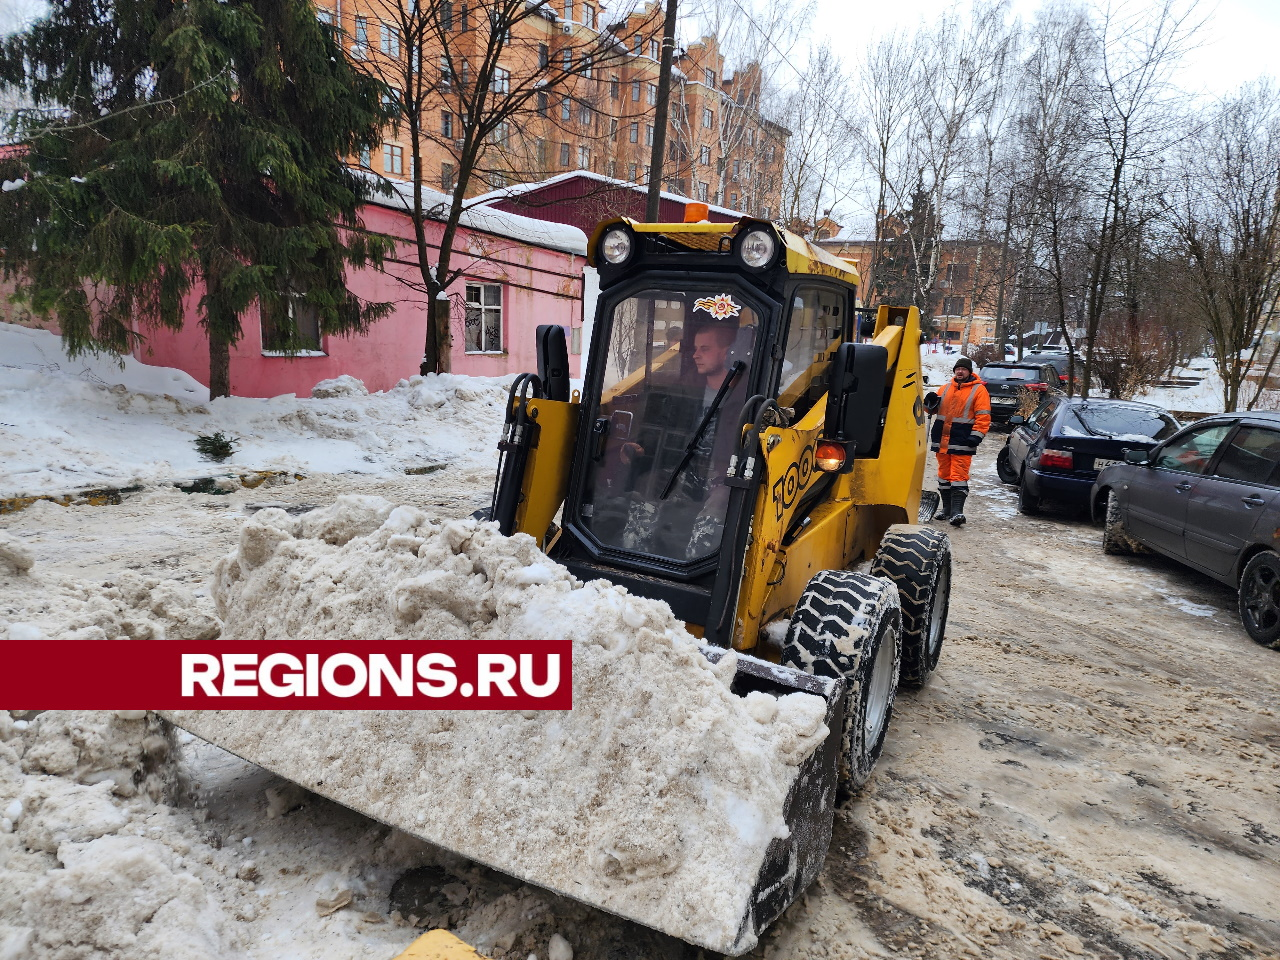 Более 50 дворов в день очищают от снега и льда коммунальщики Звенигорода